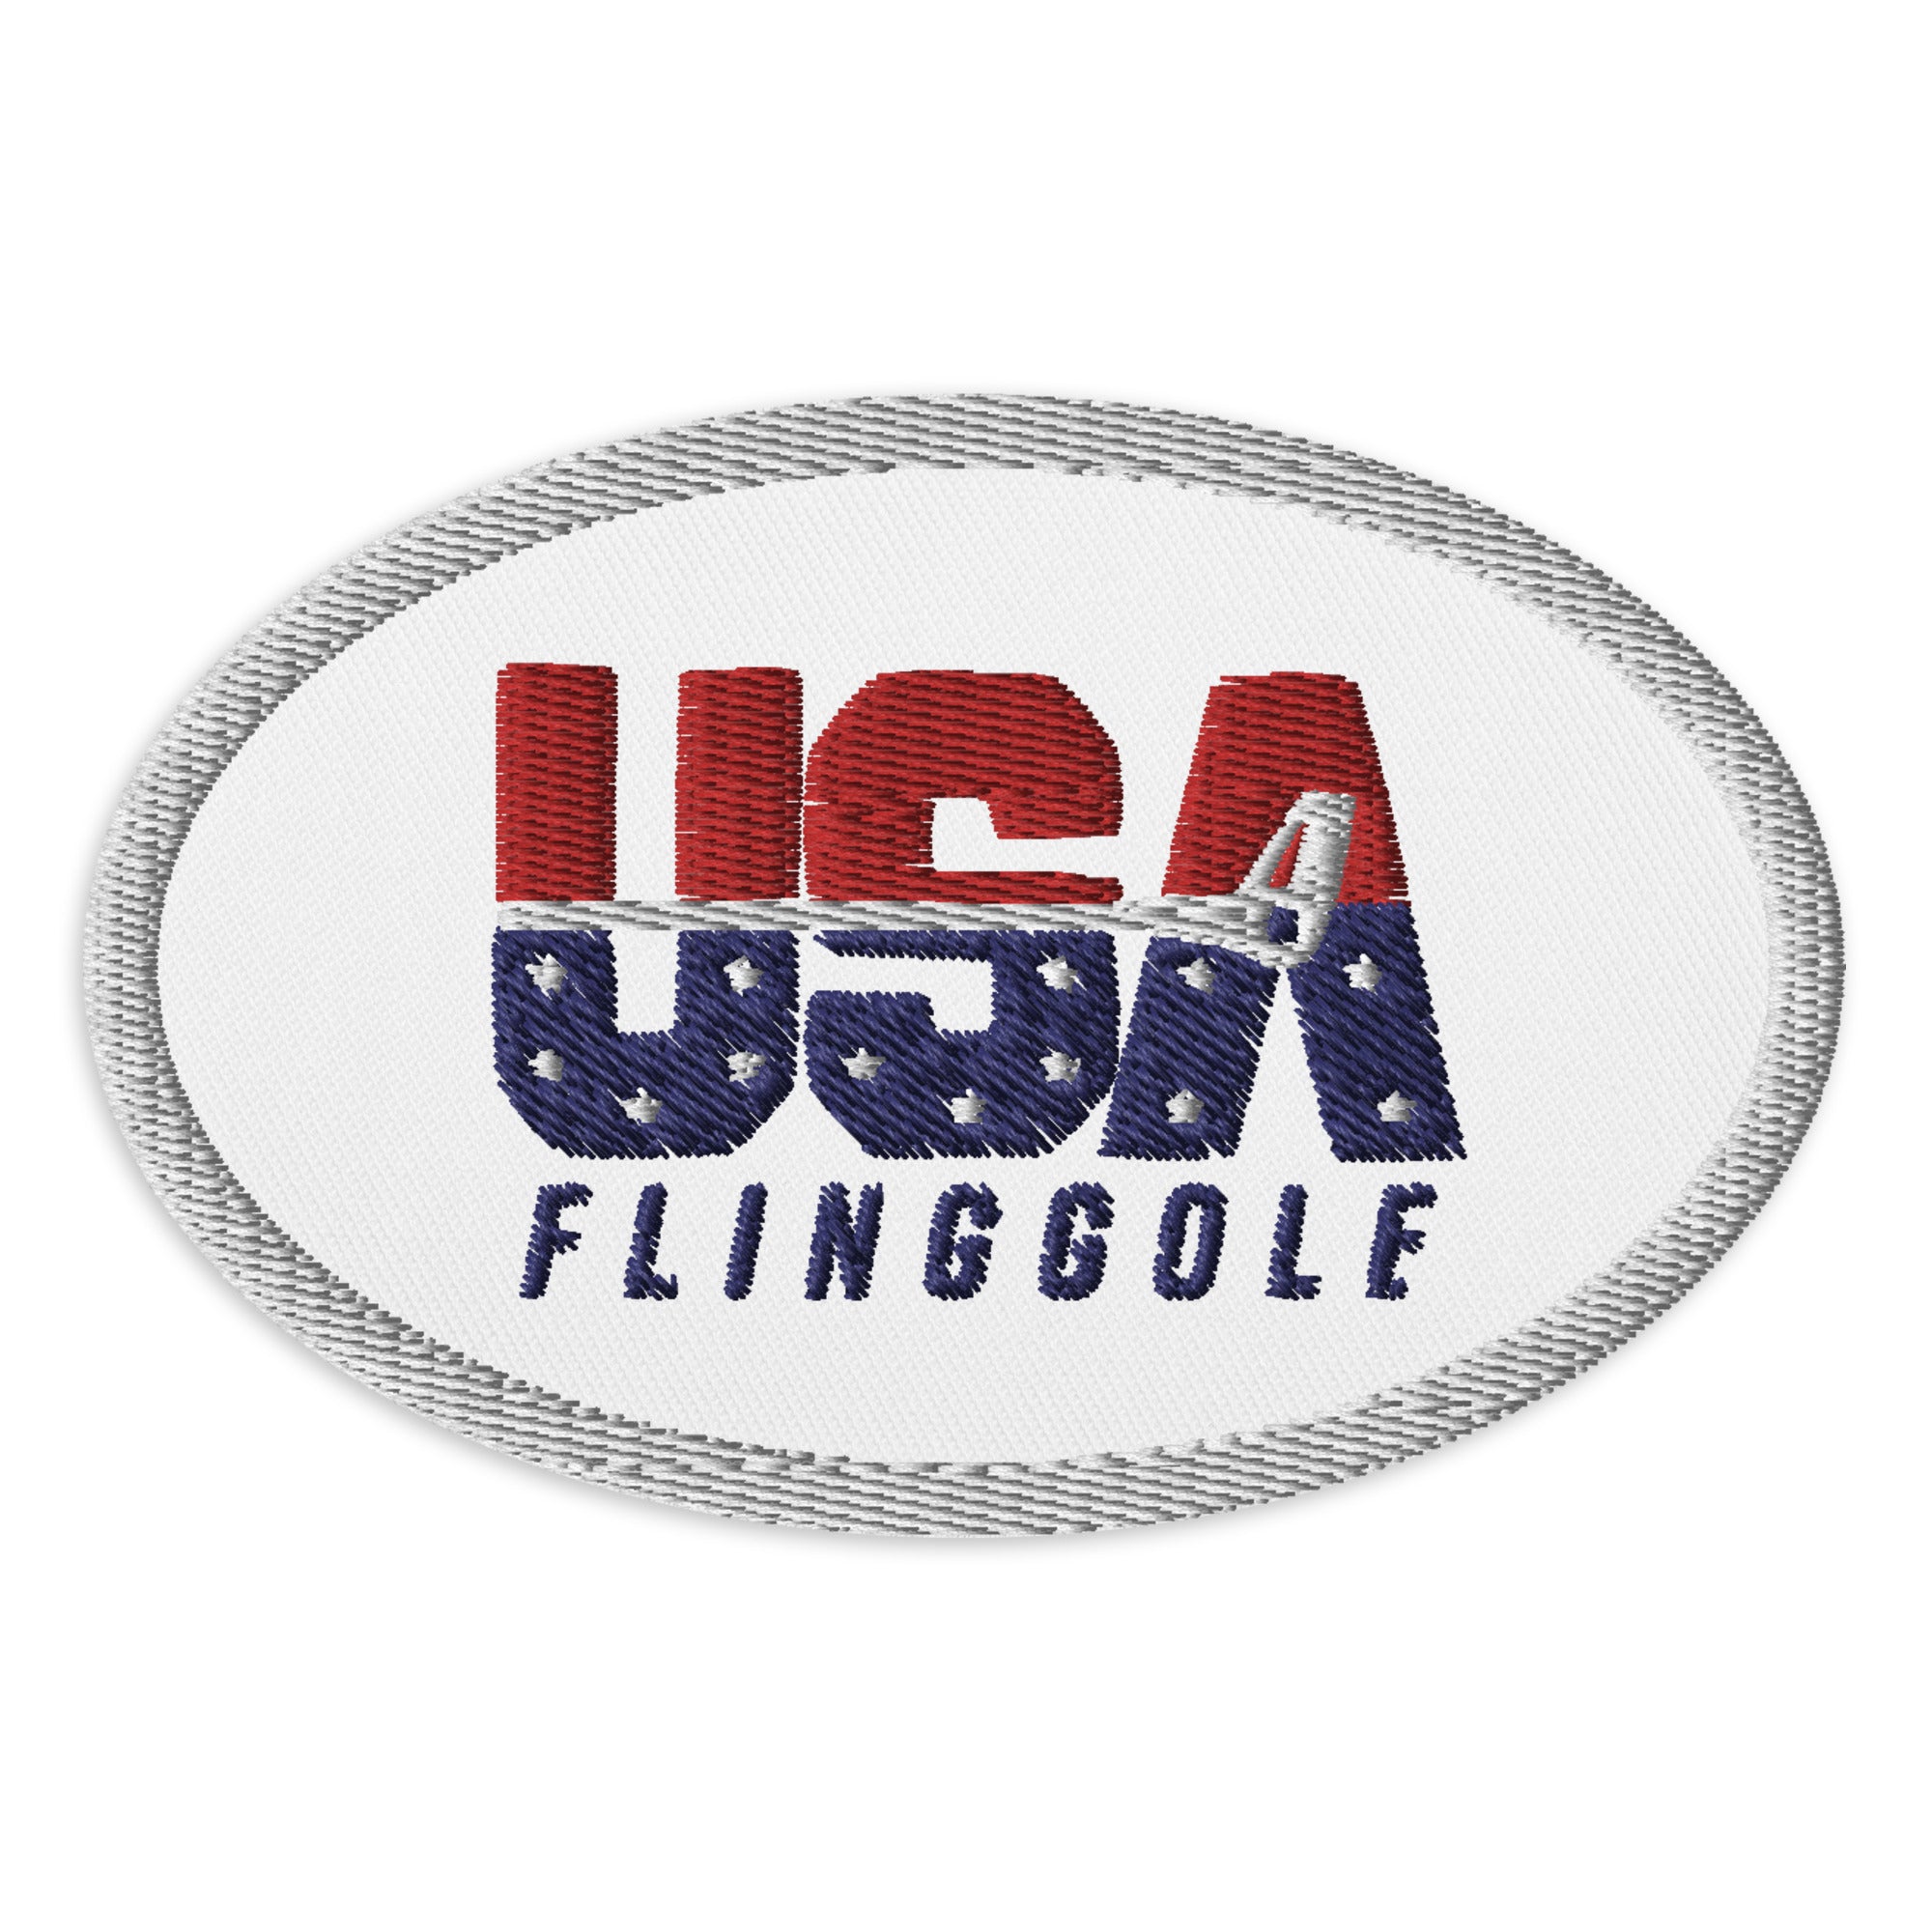 USA FlingGolf Oval Patch (White)